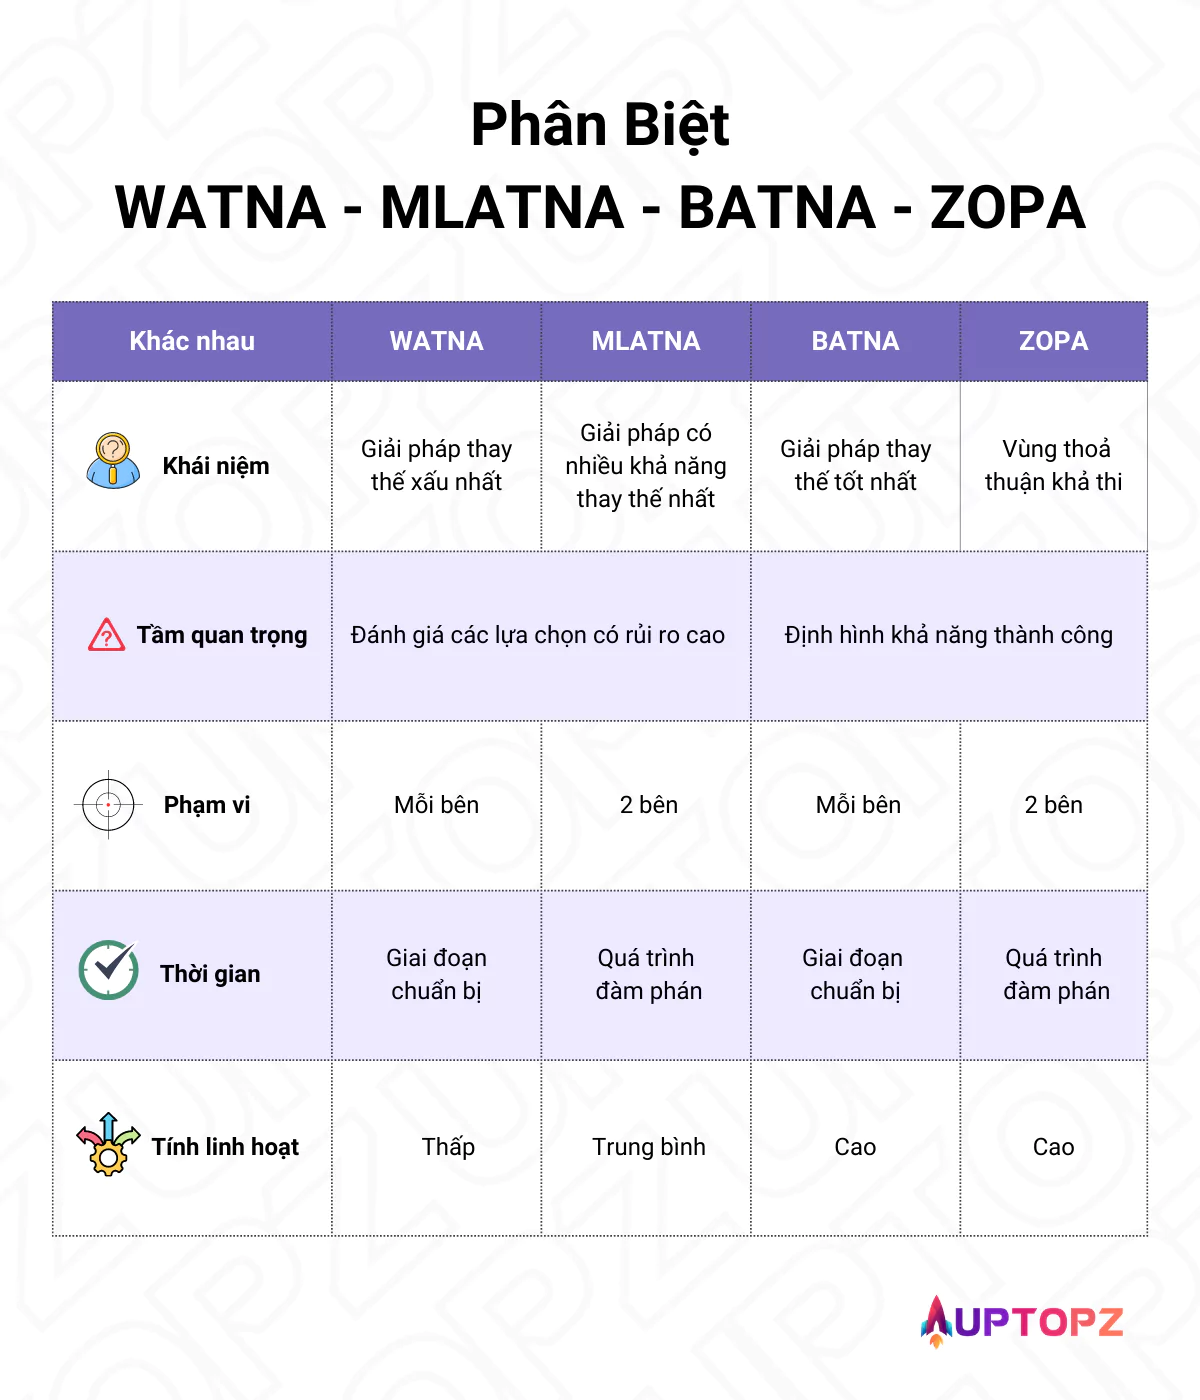 Sự khác nhau giữa các thuật ngữ: WATNA - MLATNA - BATNA và ZOPA